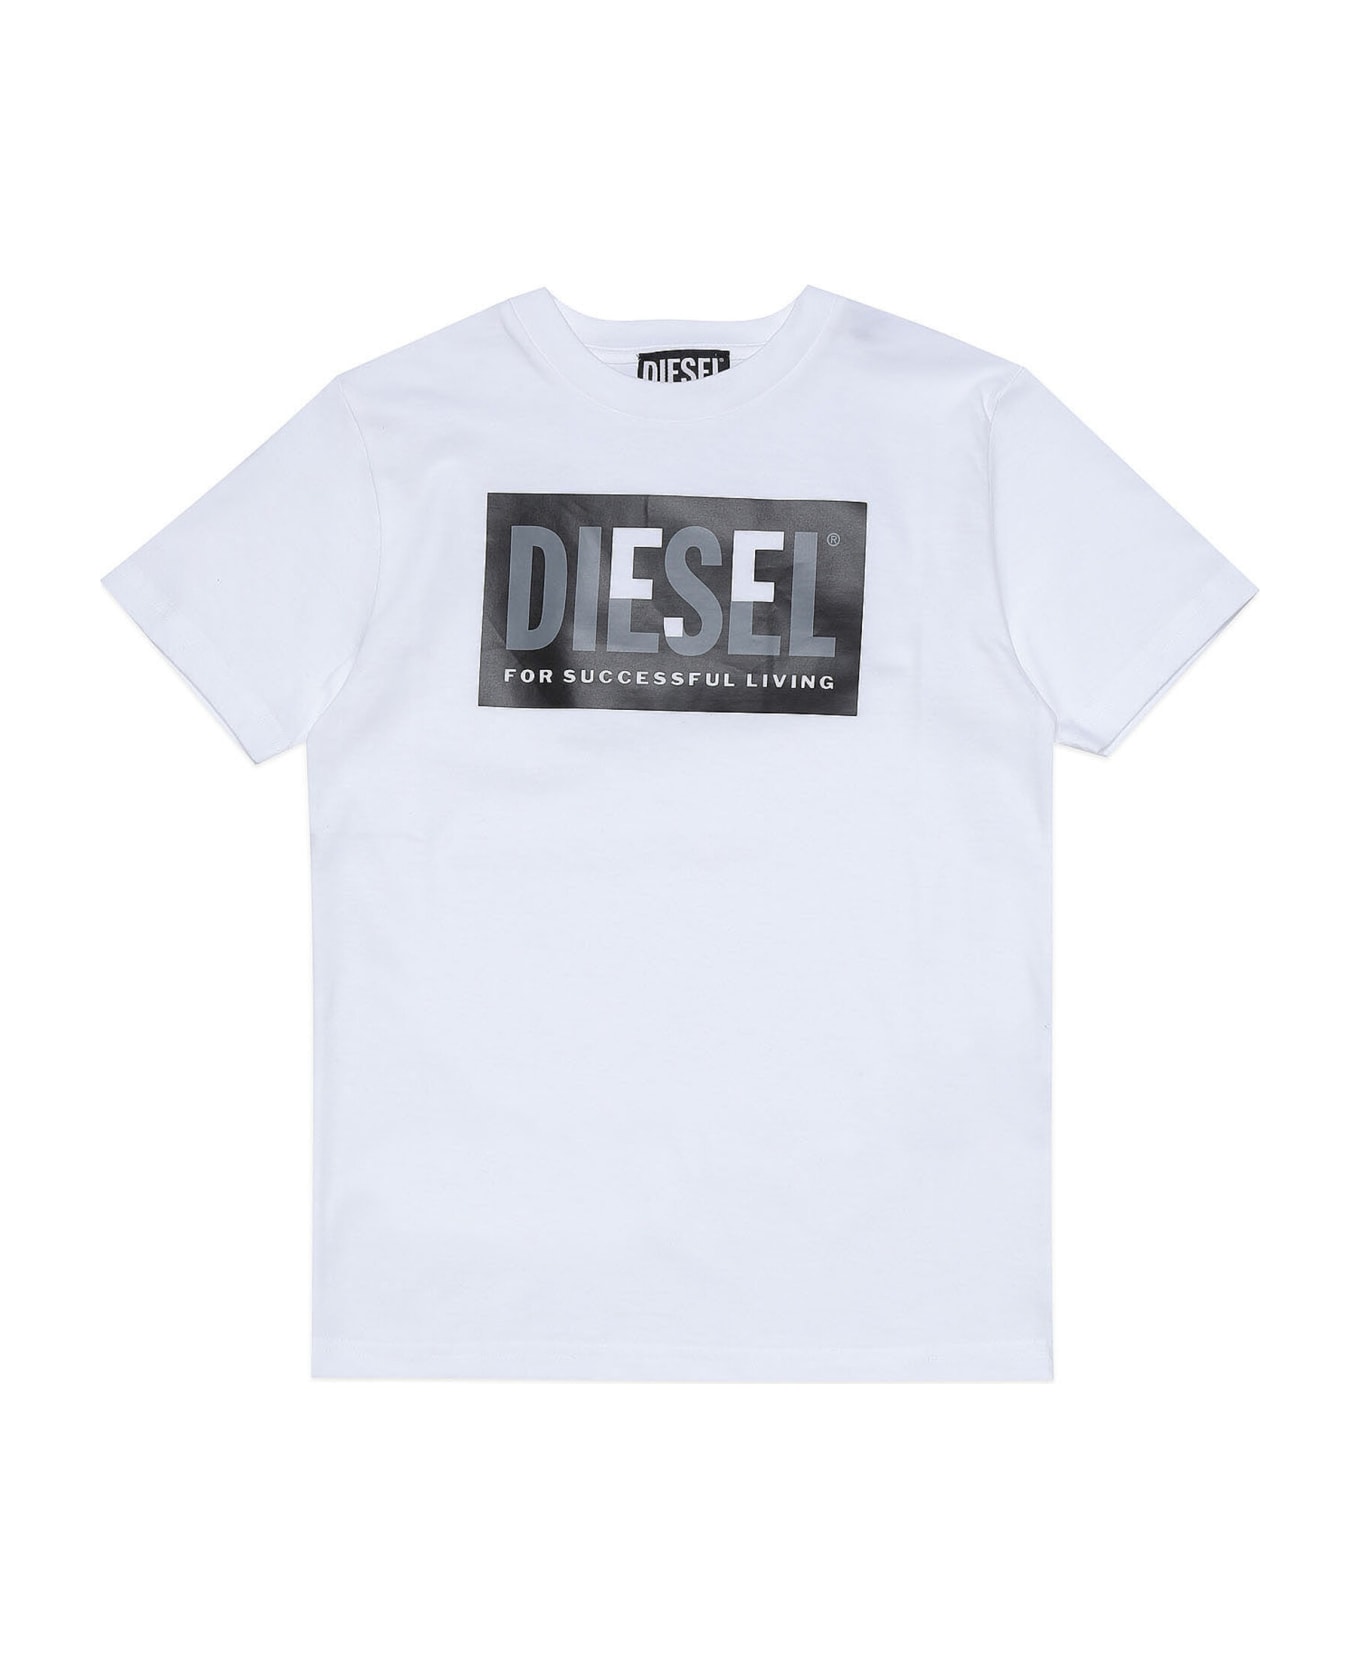 Diesel Tmiley T-shirt Diesel - White